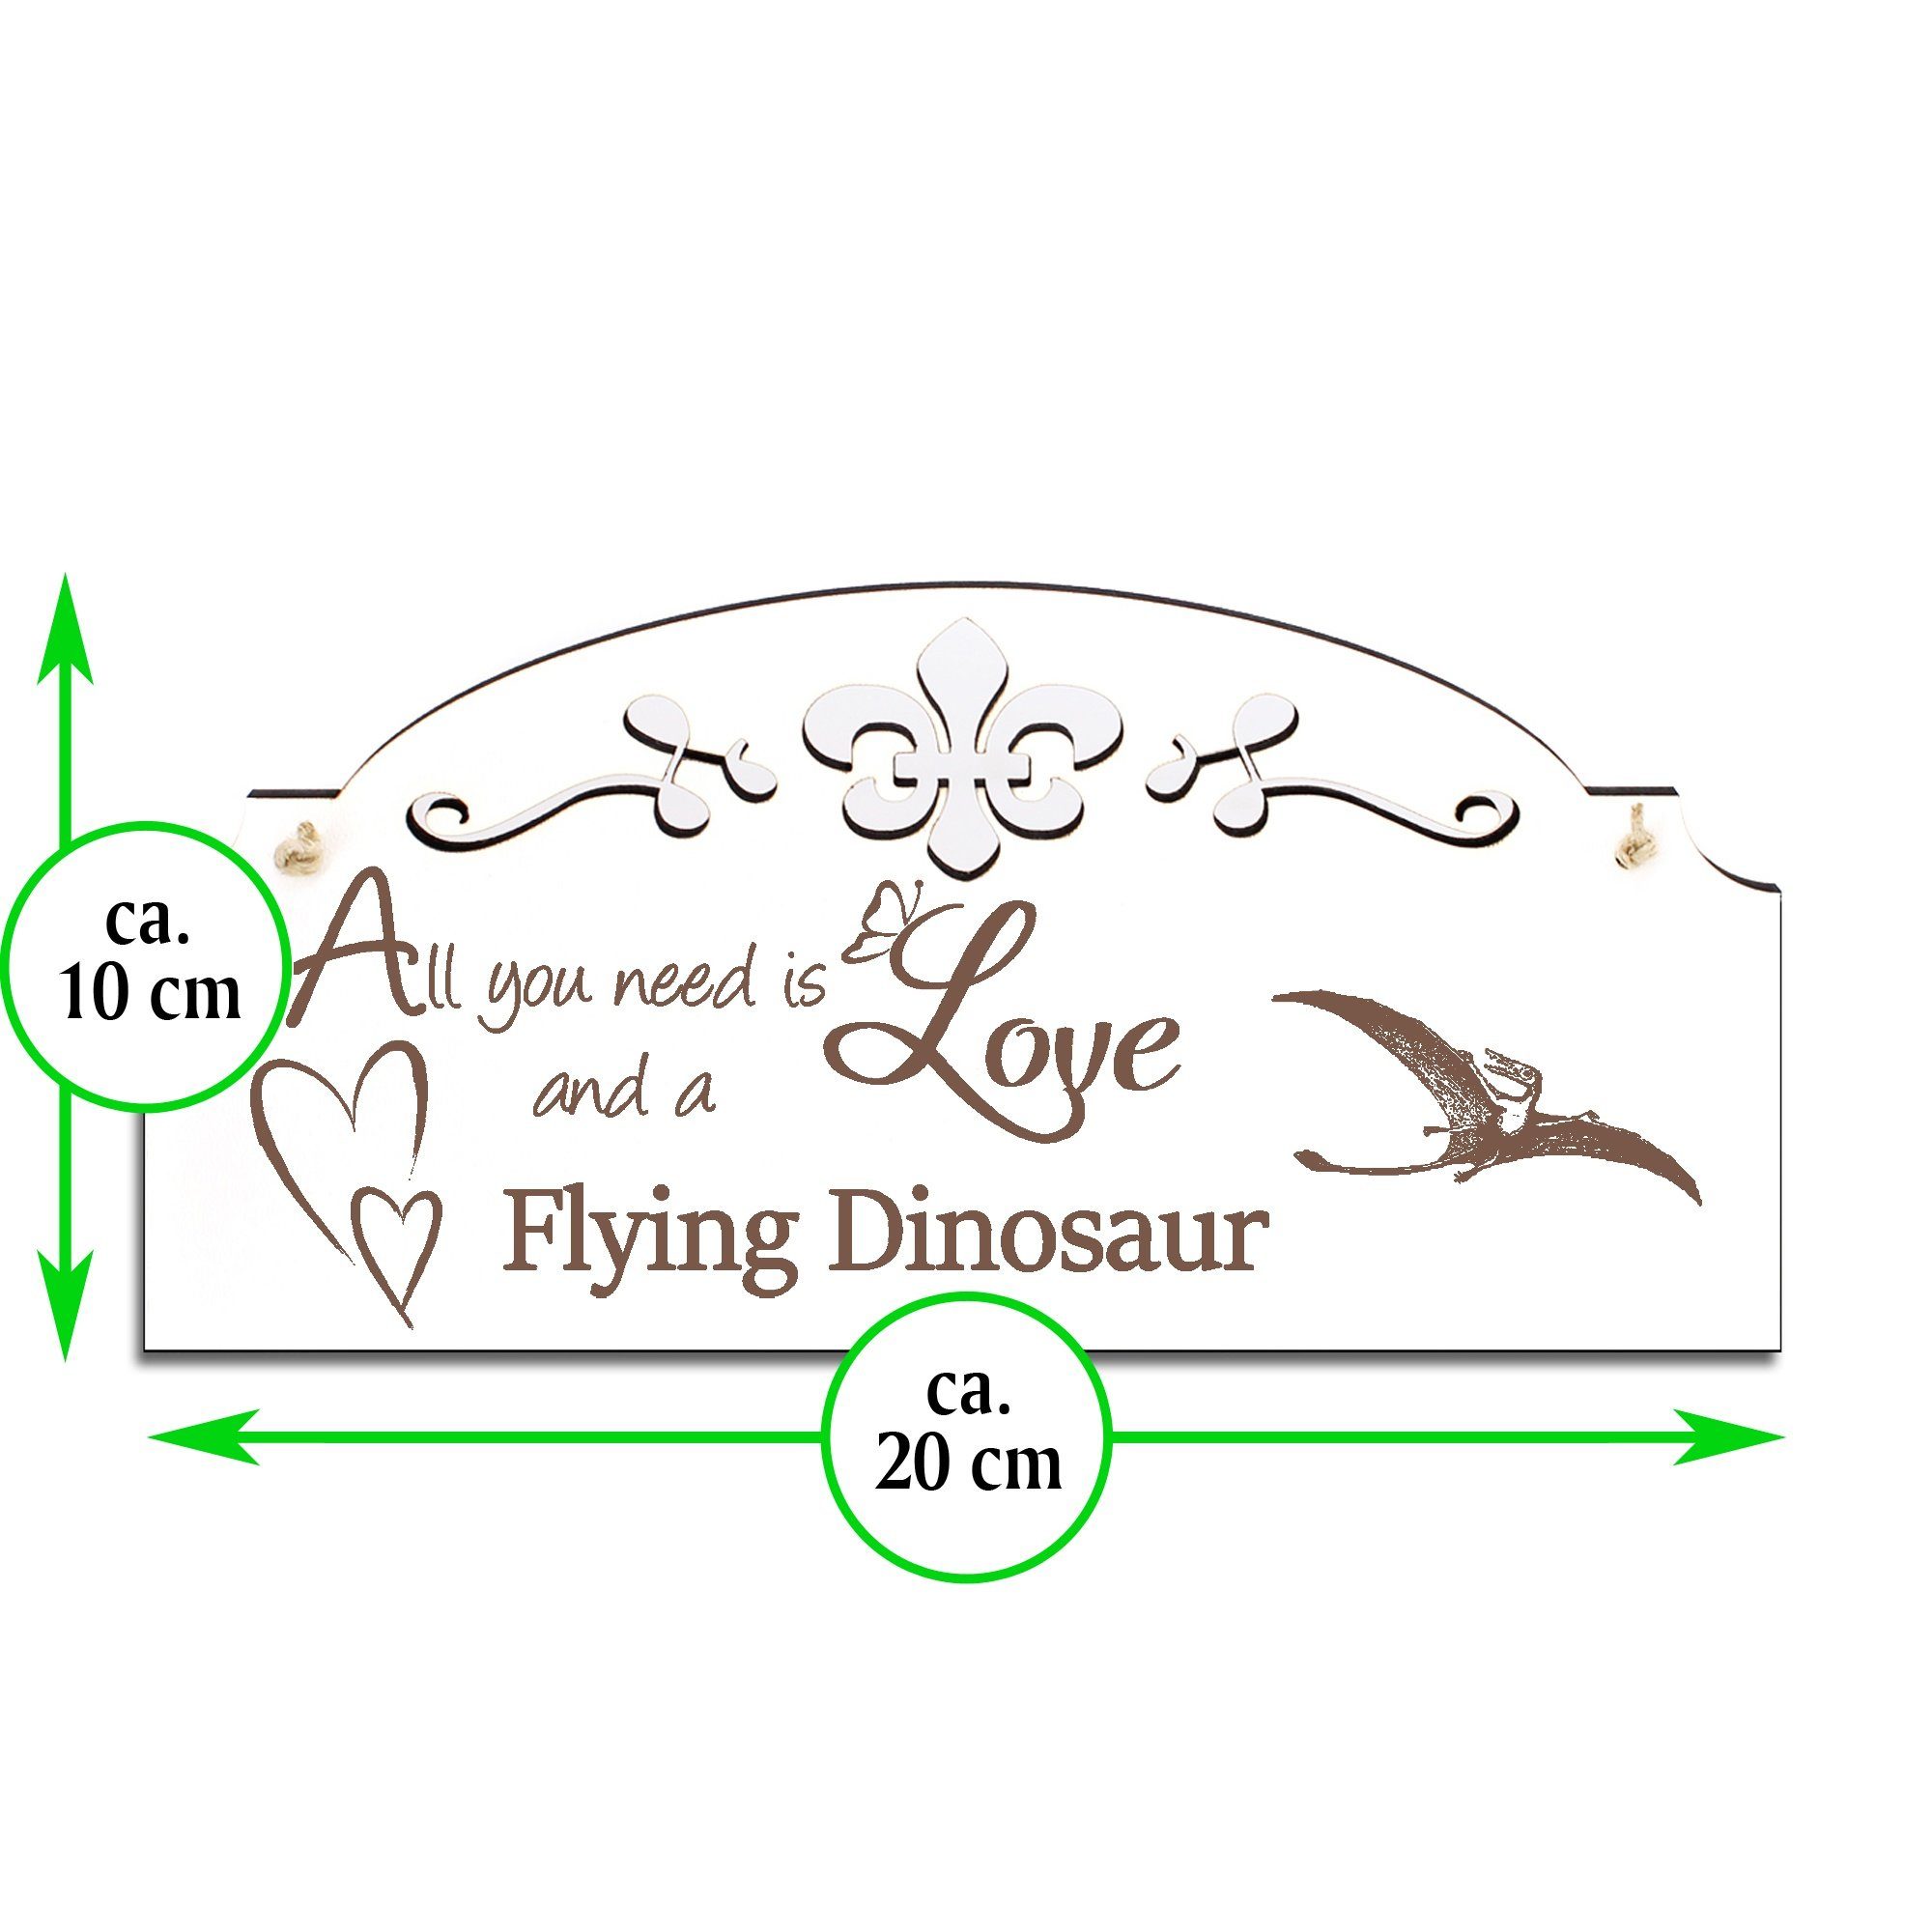 All Dinosaurier Flugsaurier need Dekolando you Deko 20x10cm Hängedekoration Love is